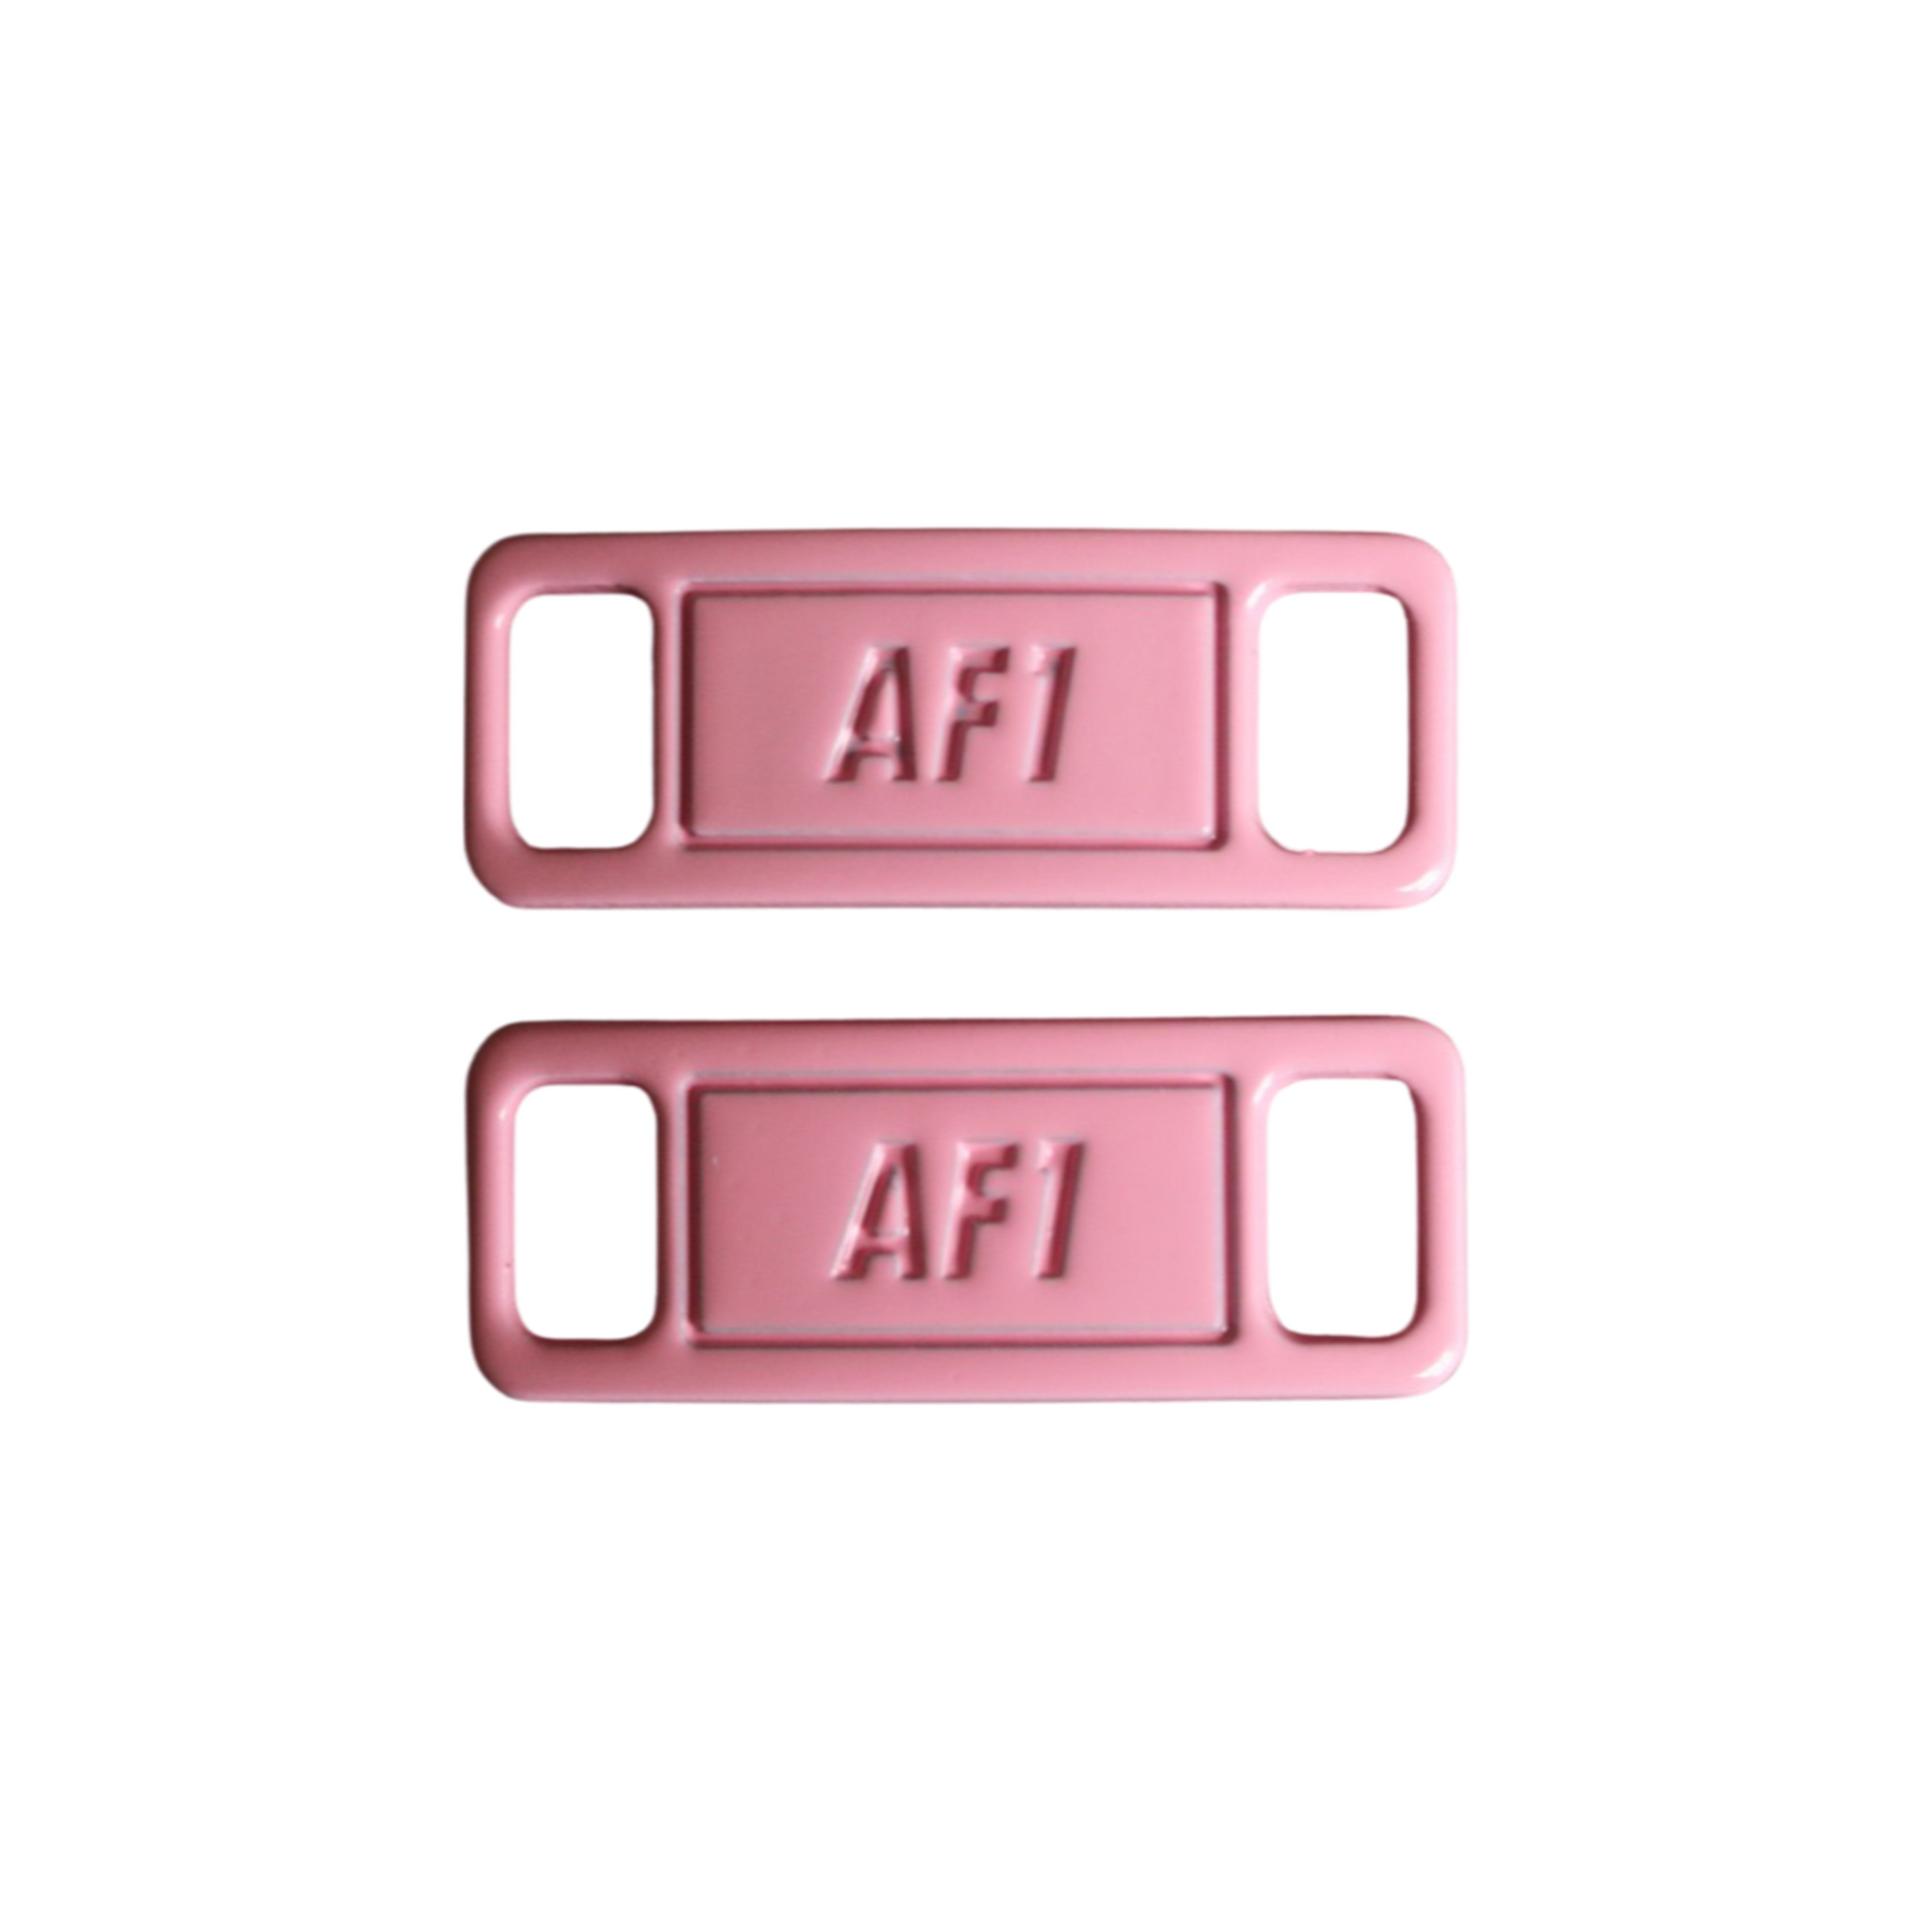 AF1 Lace Locks